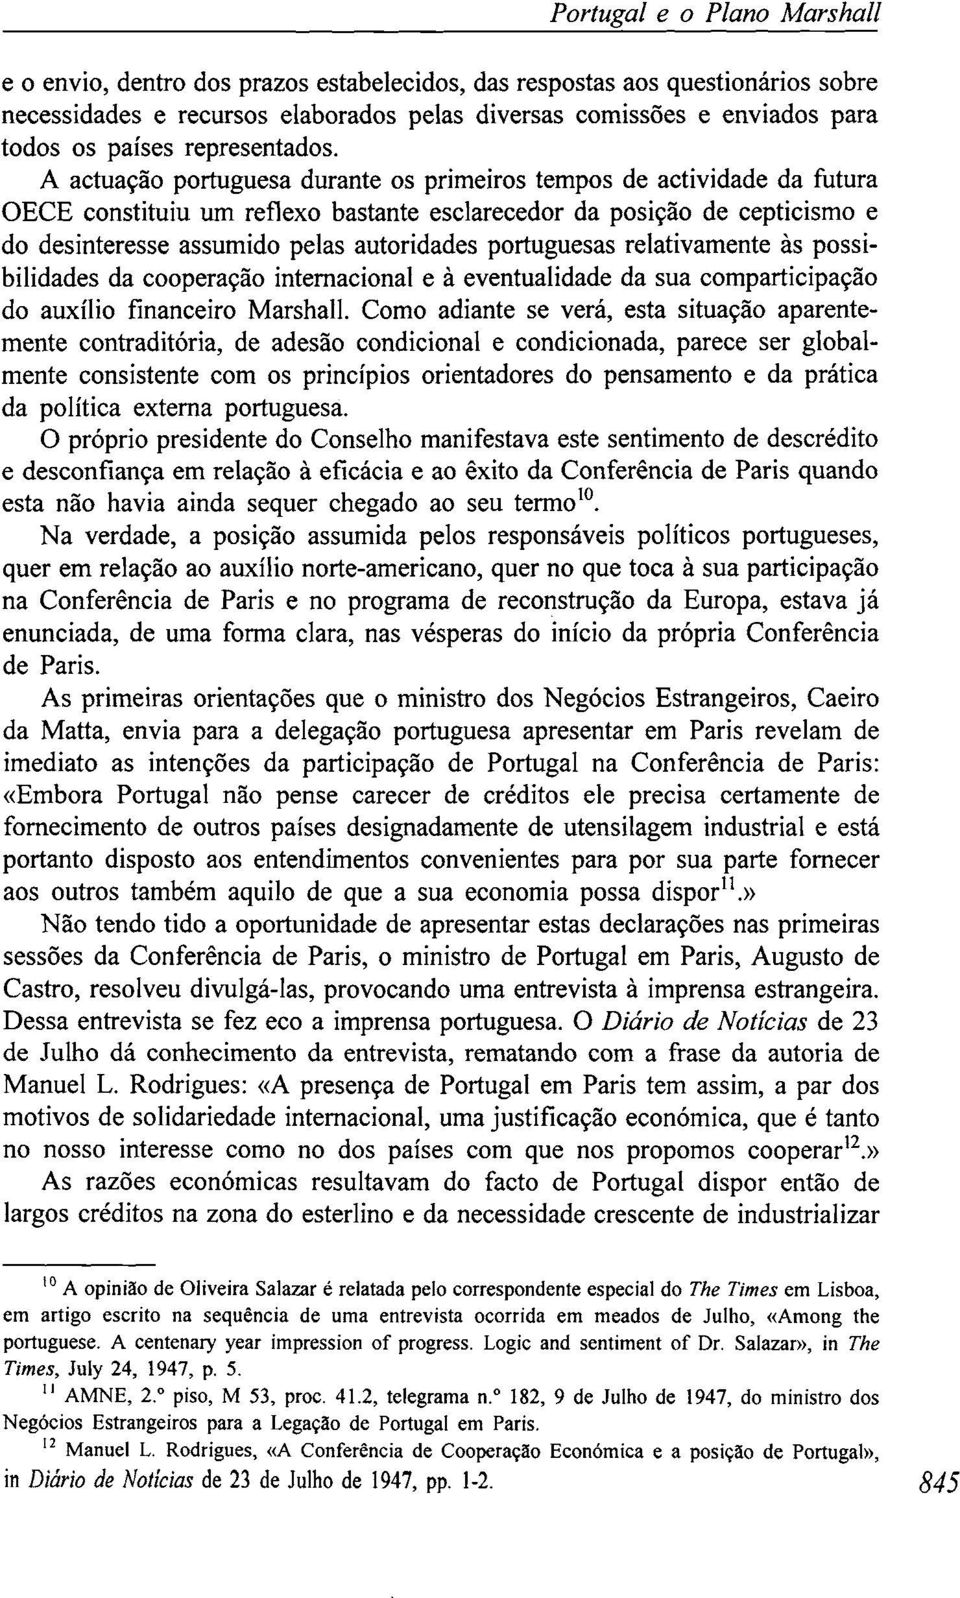 A actuação portuguesa durante os primeiros tempos de actividade da futura OECE constituiu um reflexo bastante esclarecedor da posição de cepticismo e do desinteresse assumido pelas autoridades